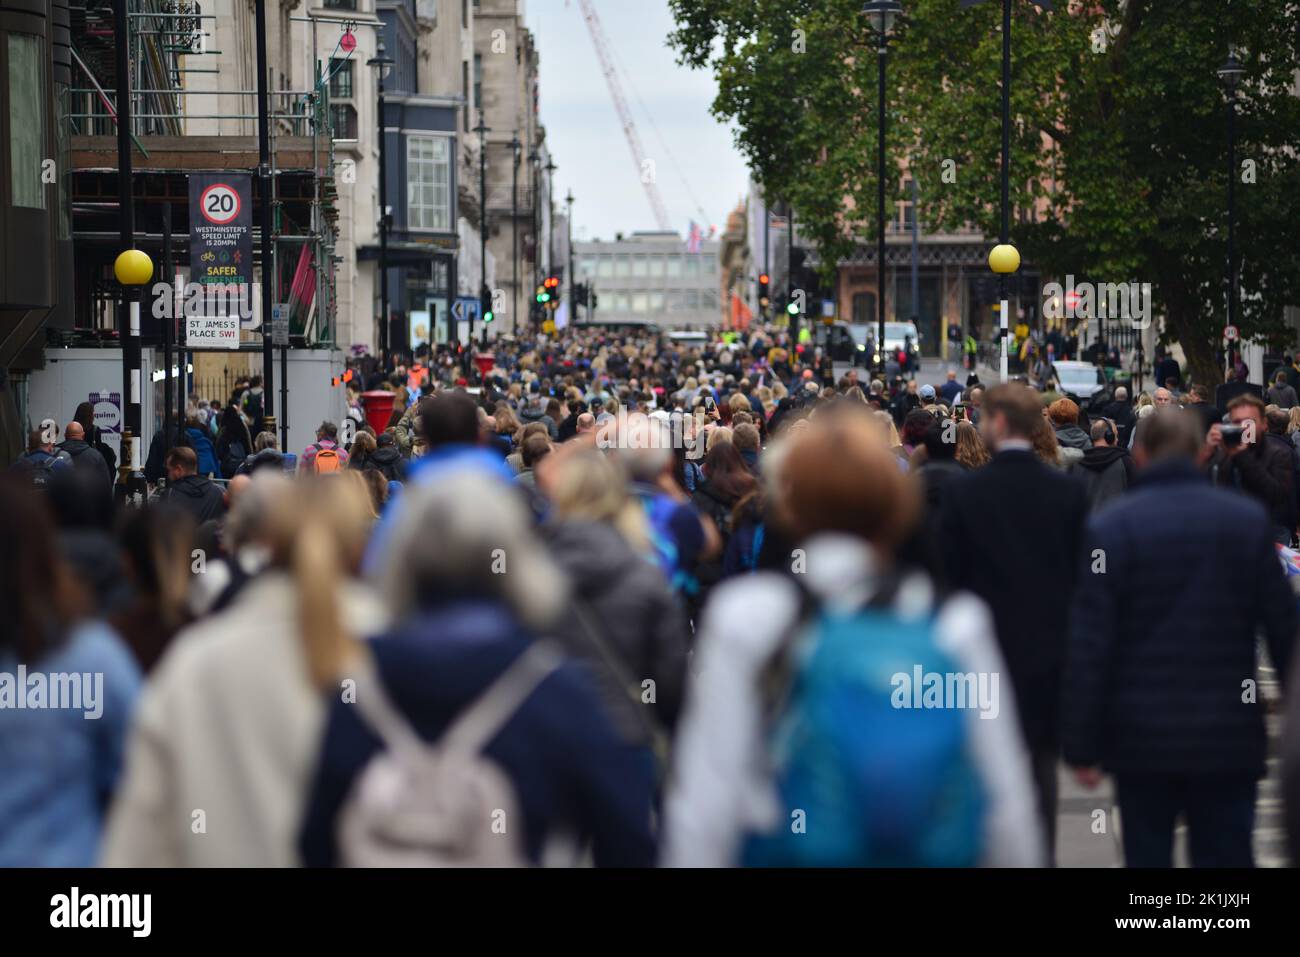 Funeral de Su Majestad la Reina Isabel II, Londres, Reino Unido, lunes 19th de septiembre de 2022. Multitudes de personas hacen su camino a lo largo de la calle St. James's Street pasando St. James's Place. Foto de stock